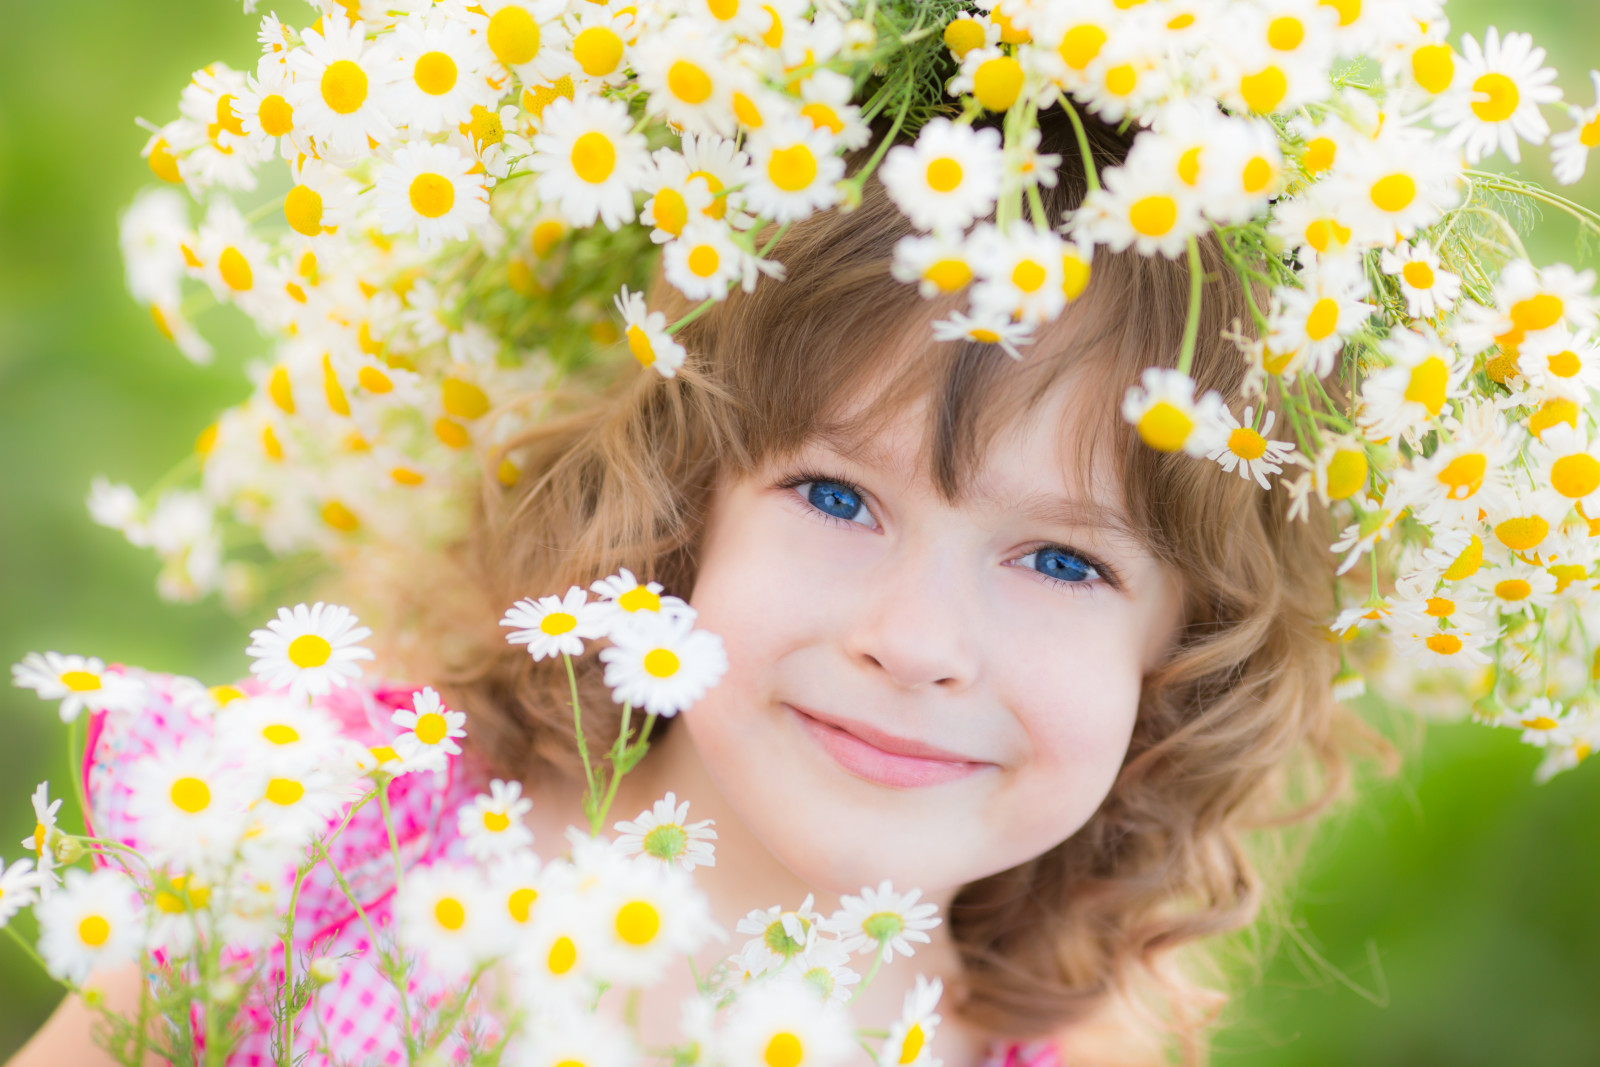 소녀, 미소, 꽃들, 아이, 화환, 파란 눈